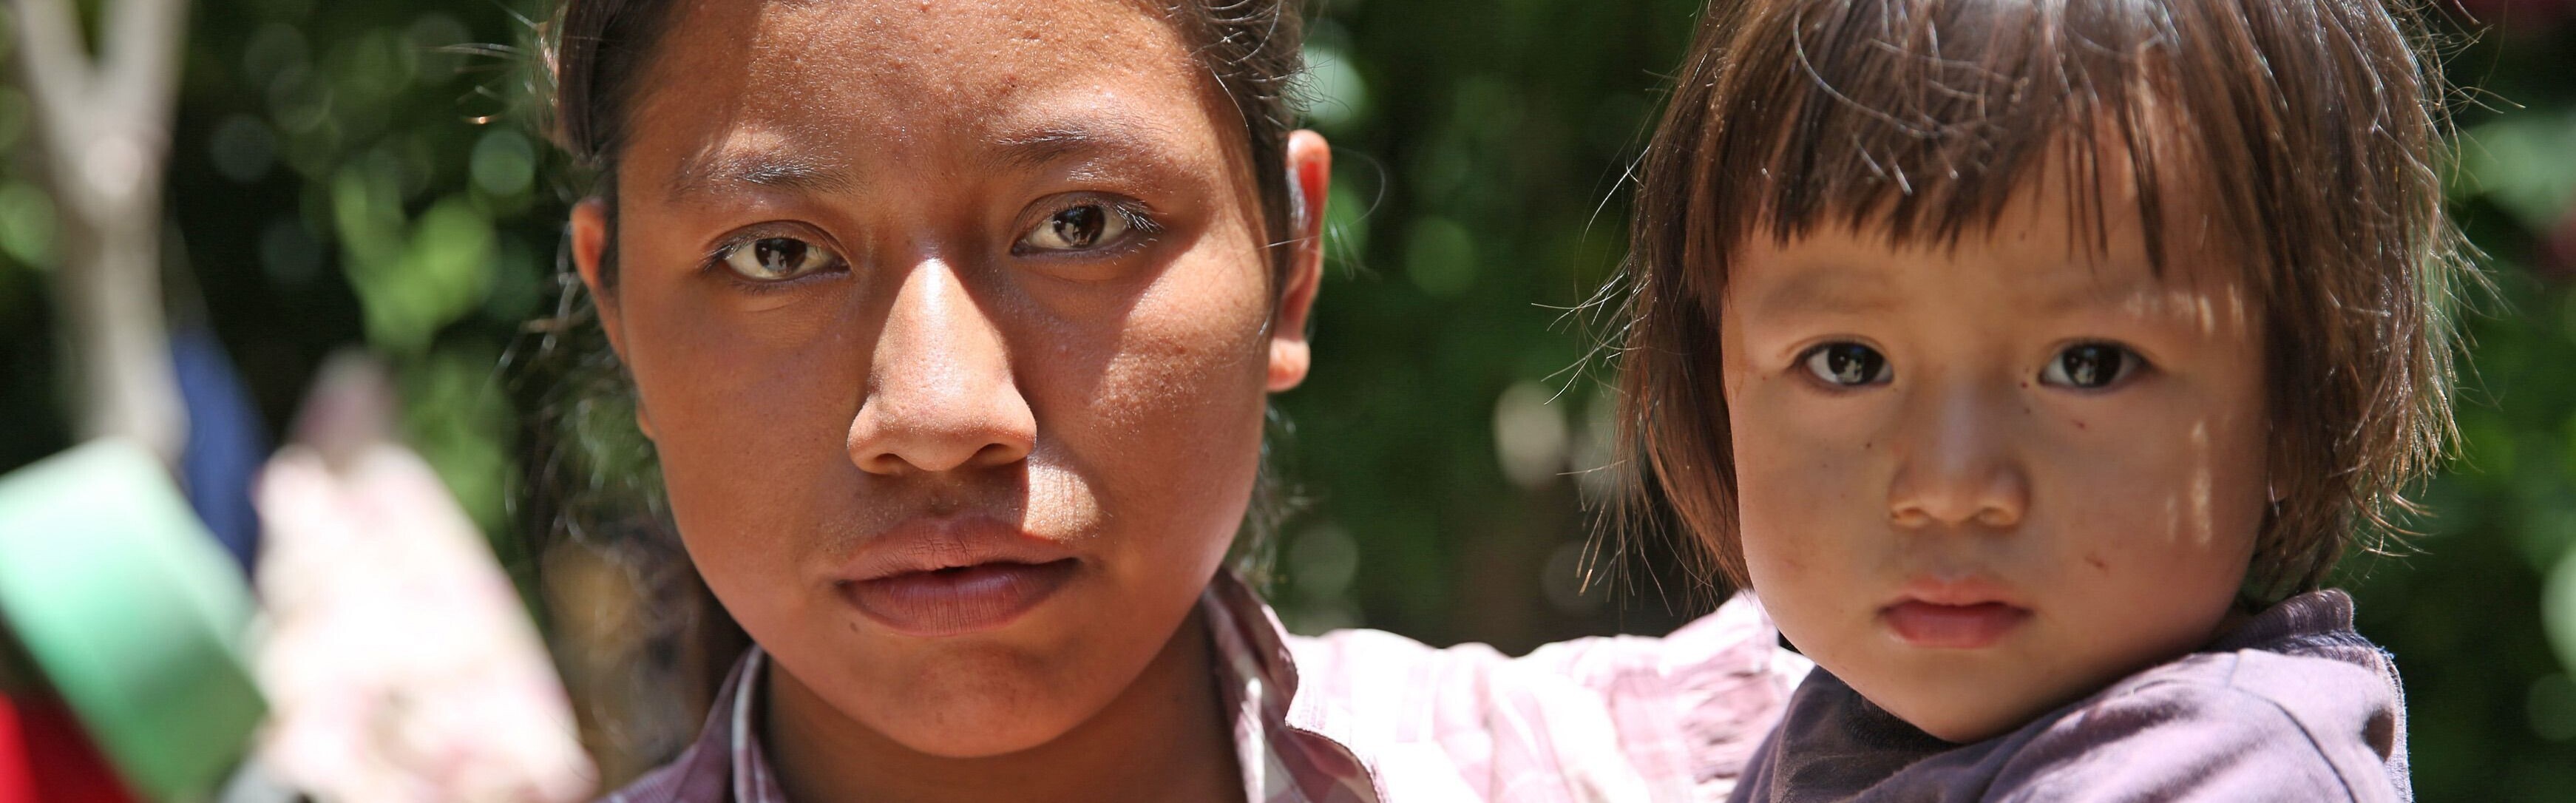 Eine Frau und ihre kleine Tochter in Guatemala im El Niño-Jahr 2016